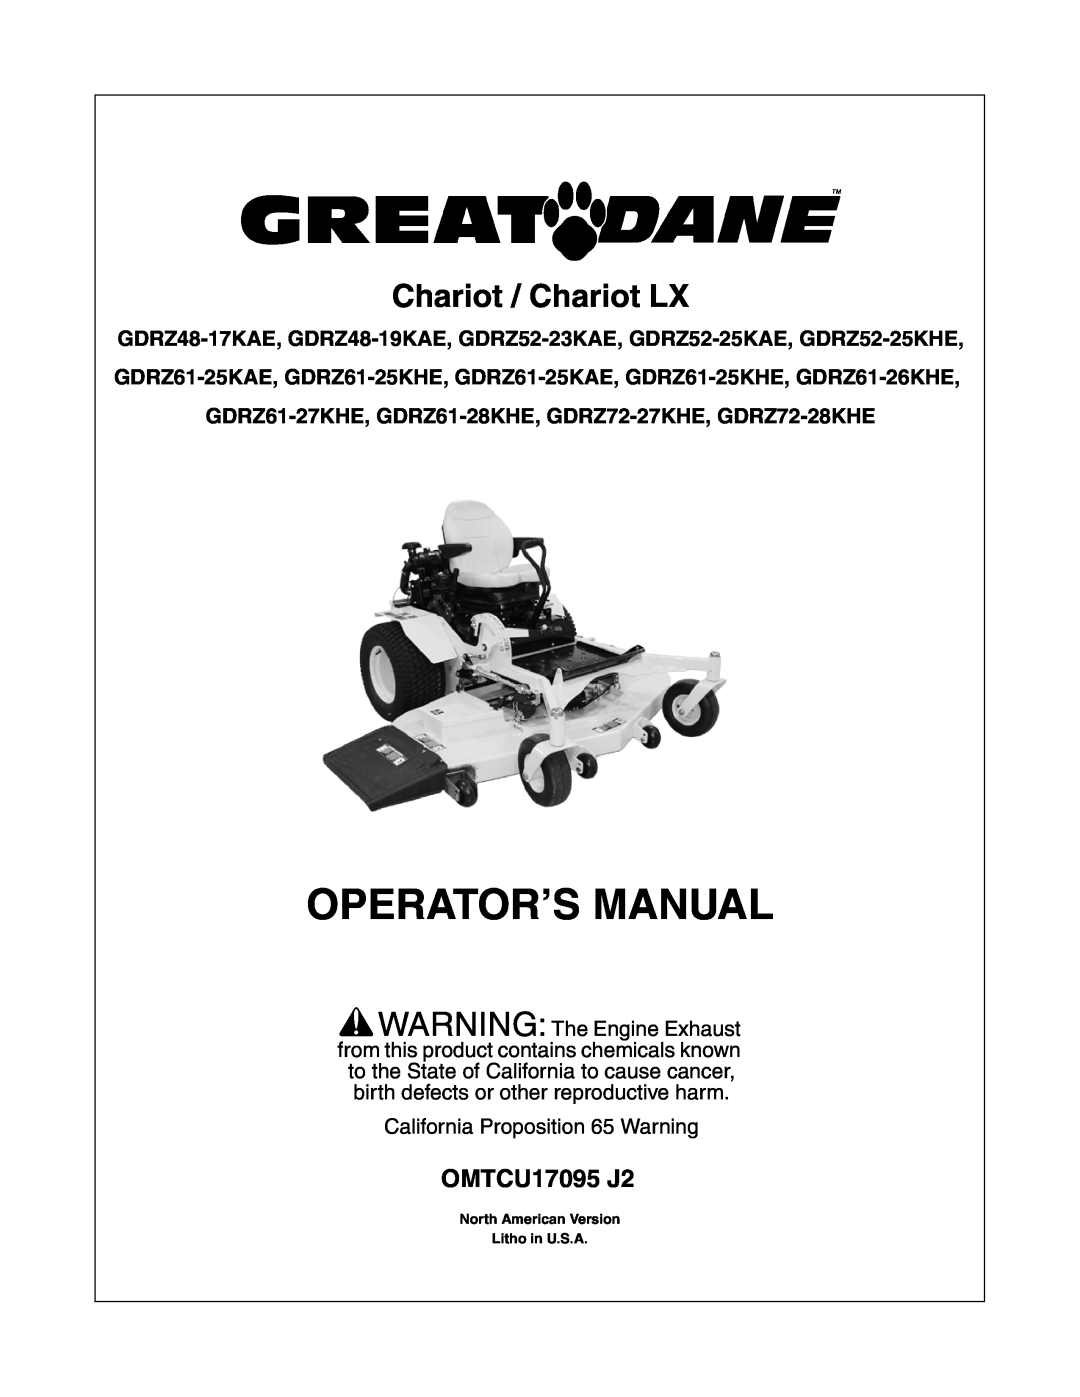 Great Dane GDRZ61-25KAE manual GDRZ48-17KAE, GDRZ48-19KAE, GDRZ52-23KAE, GDRZ52-25KAE, GDRZ52-25KHE, Operator’S Manual 